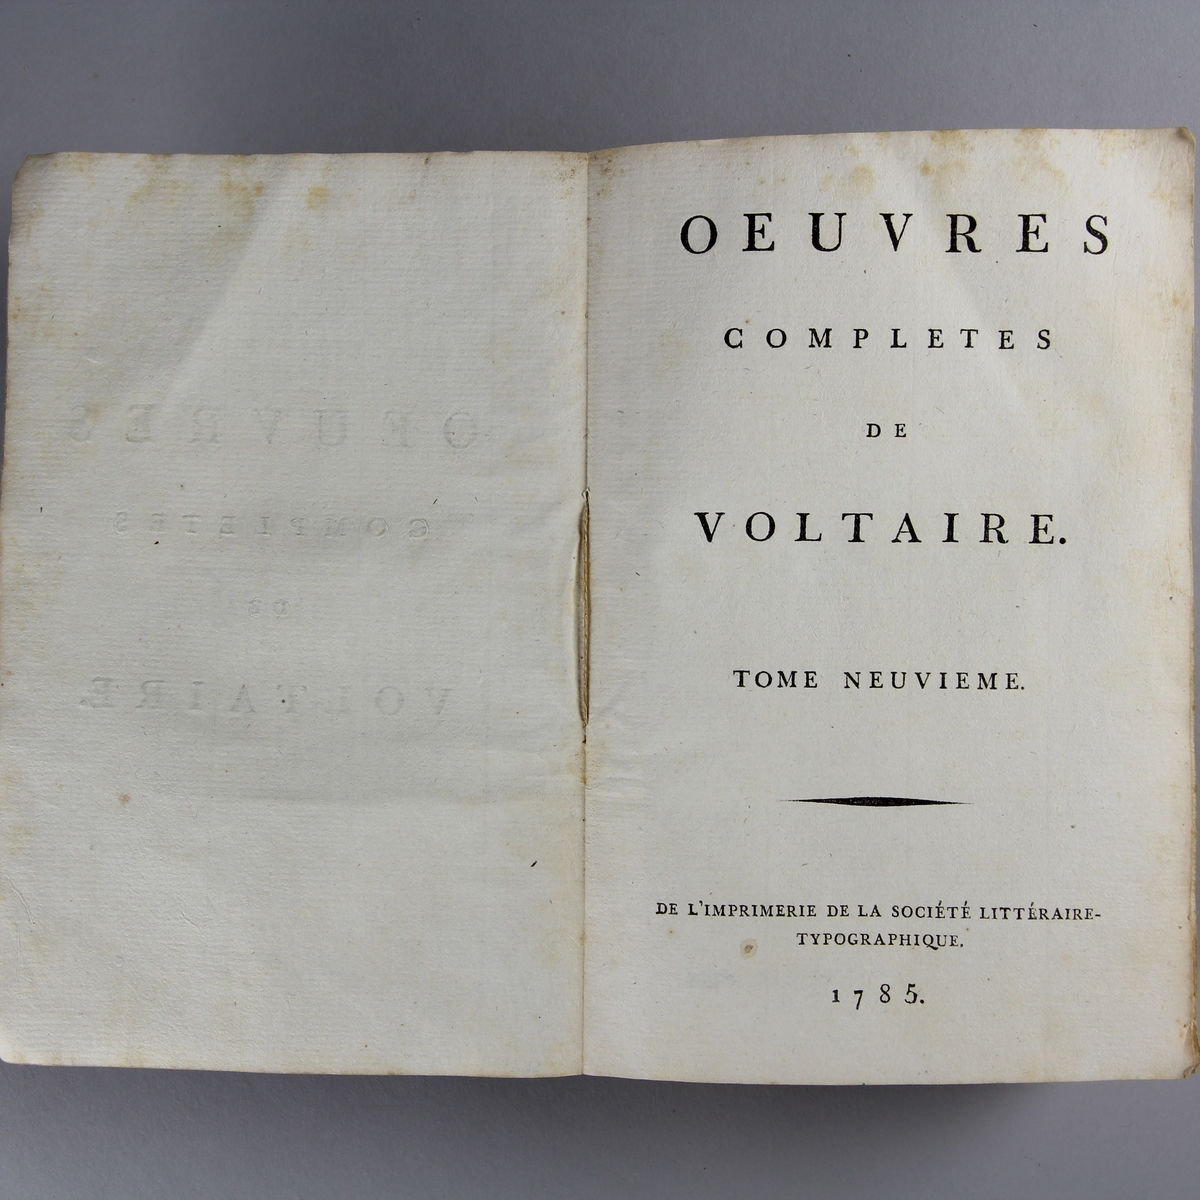 Bok, häftad,"Oeuvres complètes de Voltaire." del 9, tryckt 1785.
Pärm av gråblått papper, skurna snitt. På ryggen pappersetikett med tryckt text med volymens namn och nummer. Ryggen blekt.